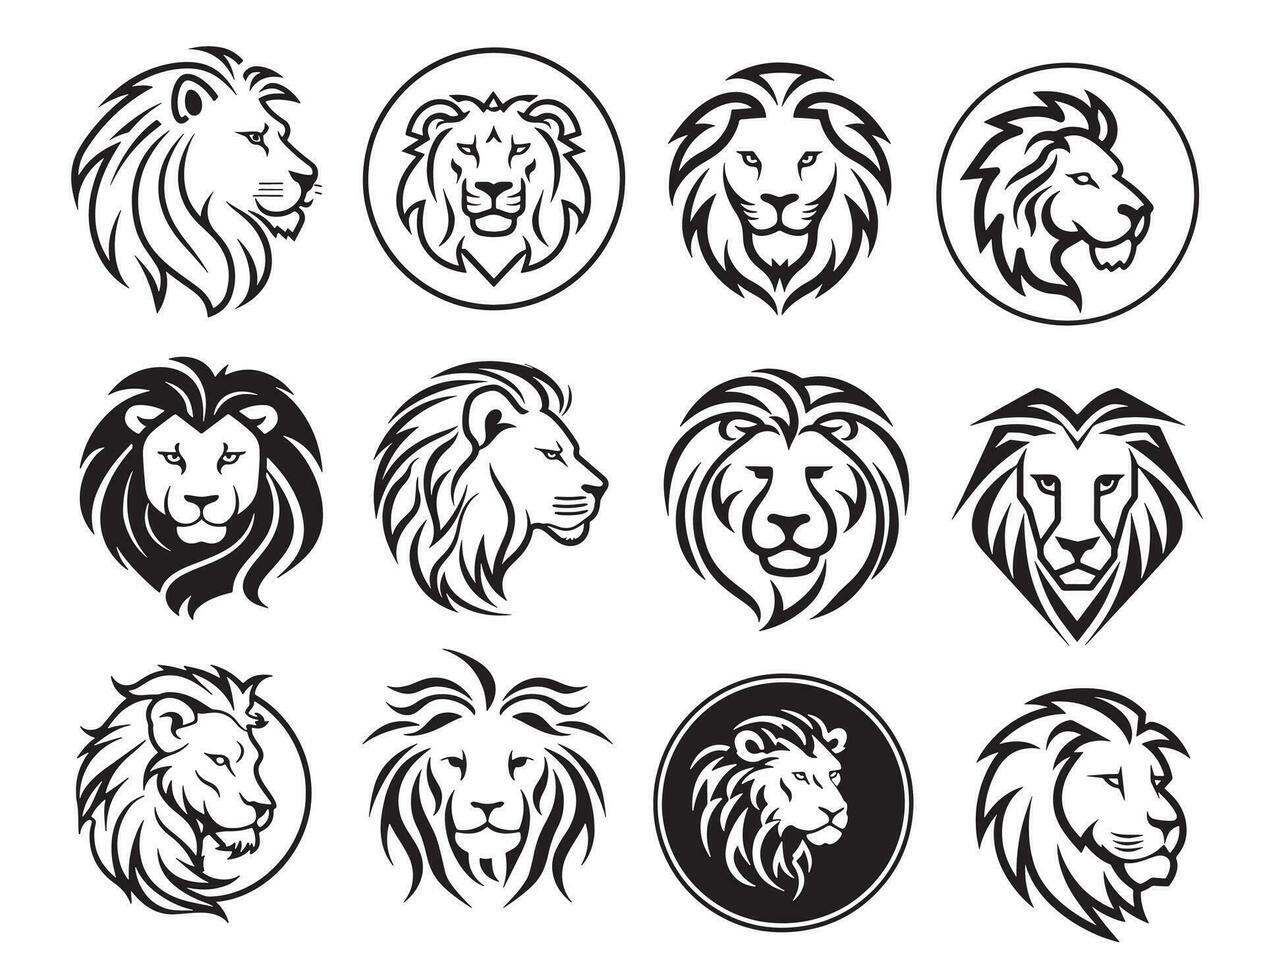 Lion face label set hand drawn sketch Vector illustration